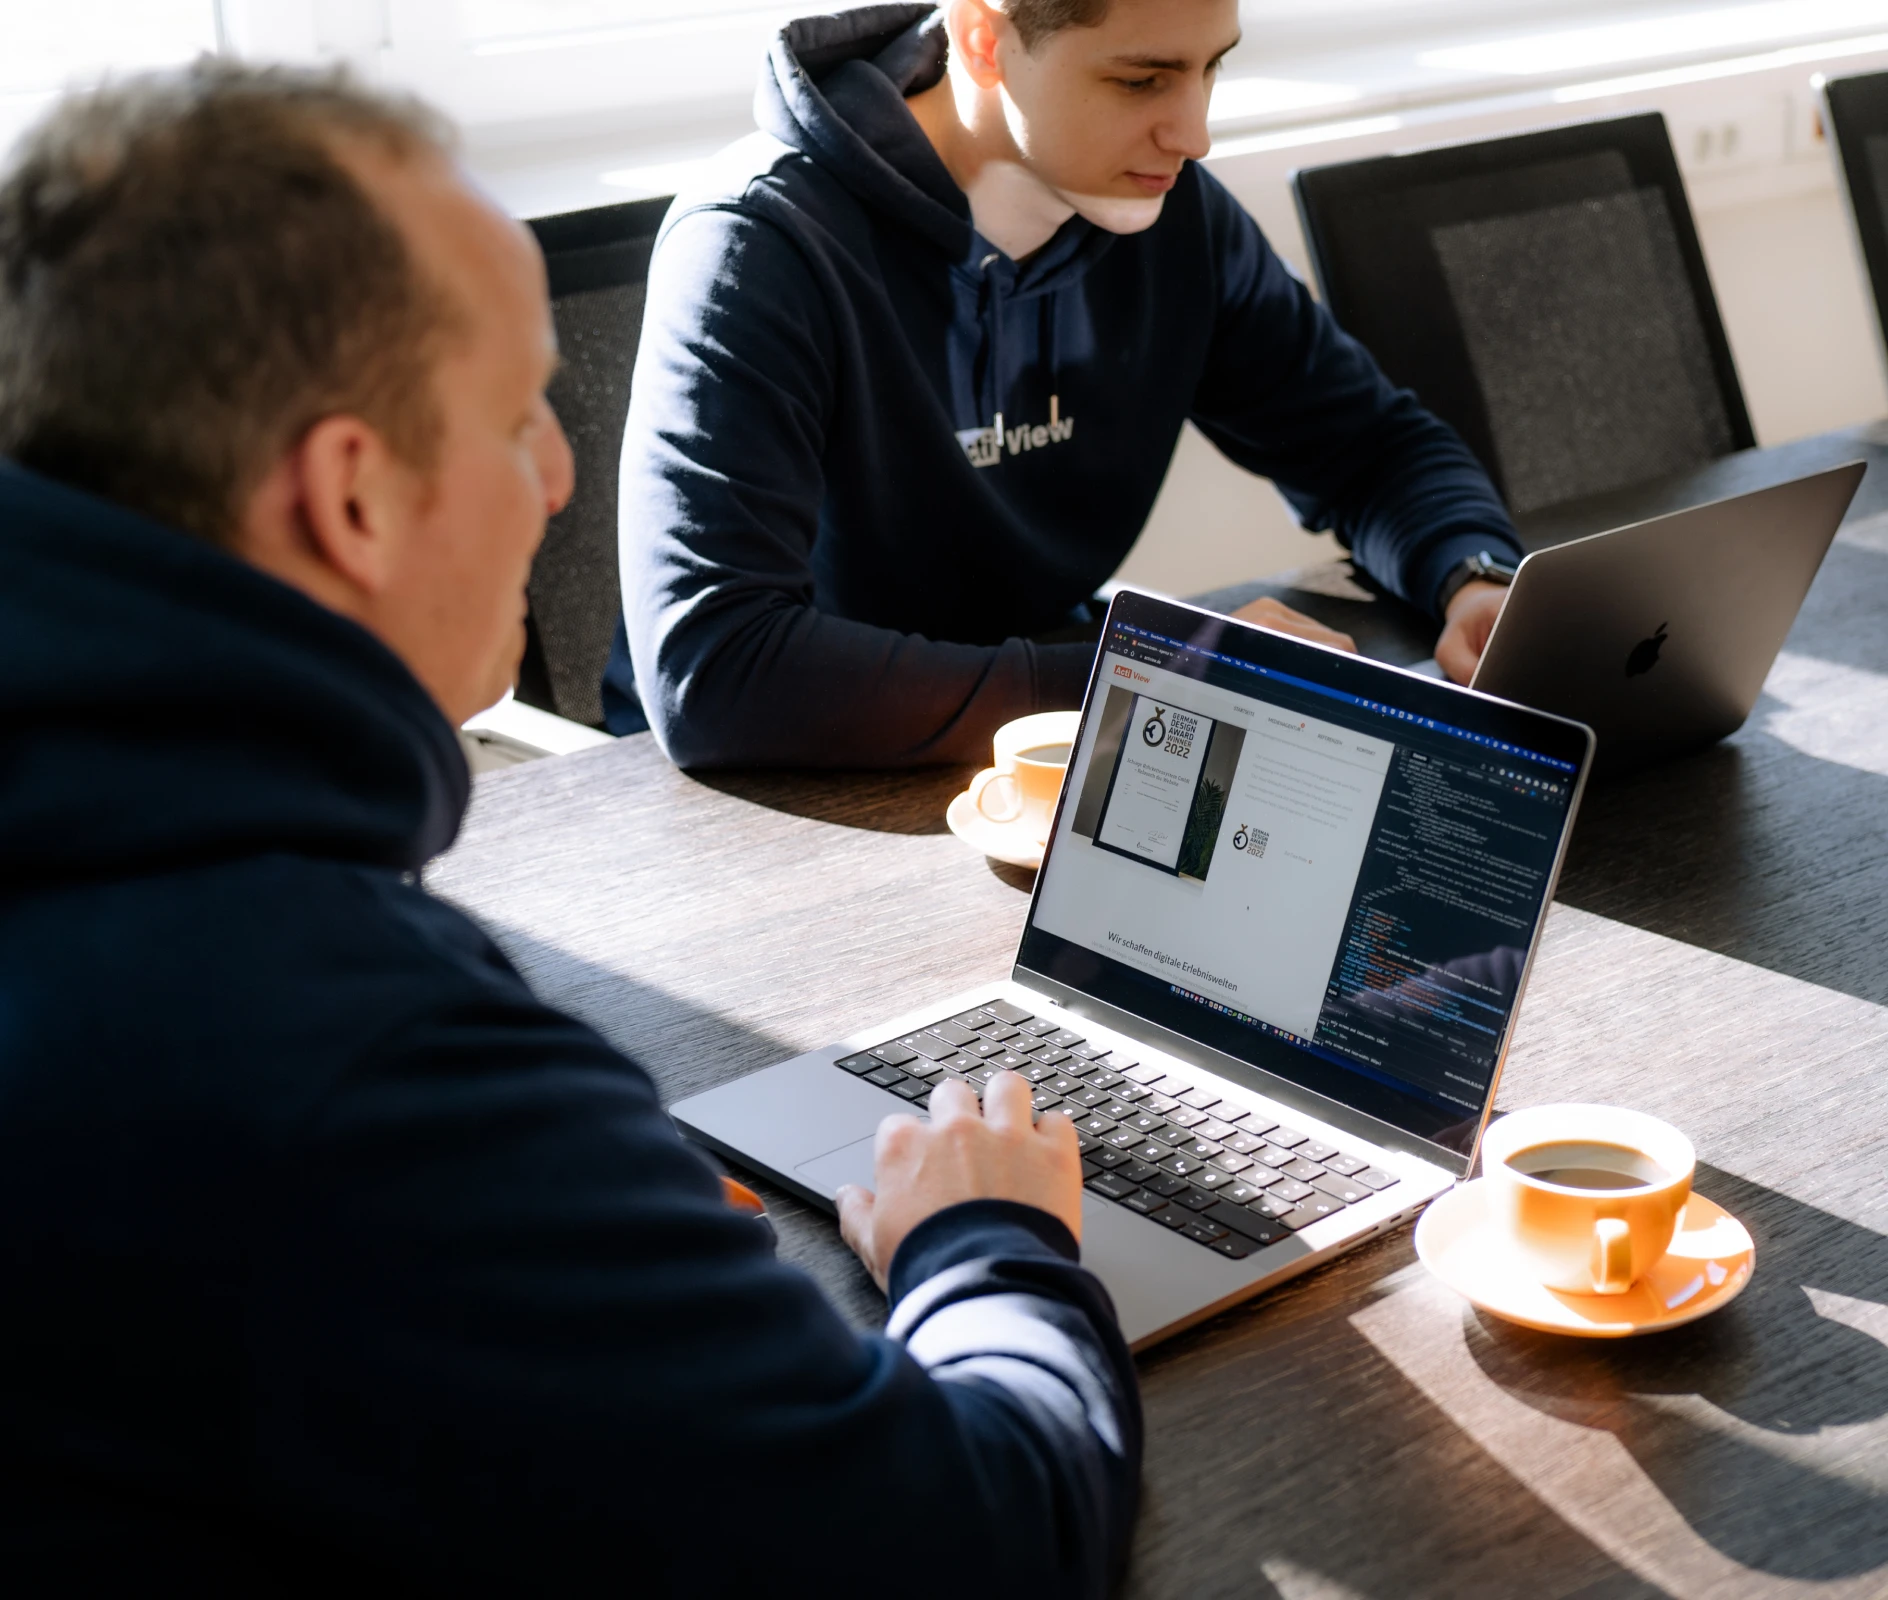 Zwei Personen in einem Business-Meeting, die auf einen Laptop mit Programmiercode schauen, mit einer Tasse Kaffee auf dem Tisch